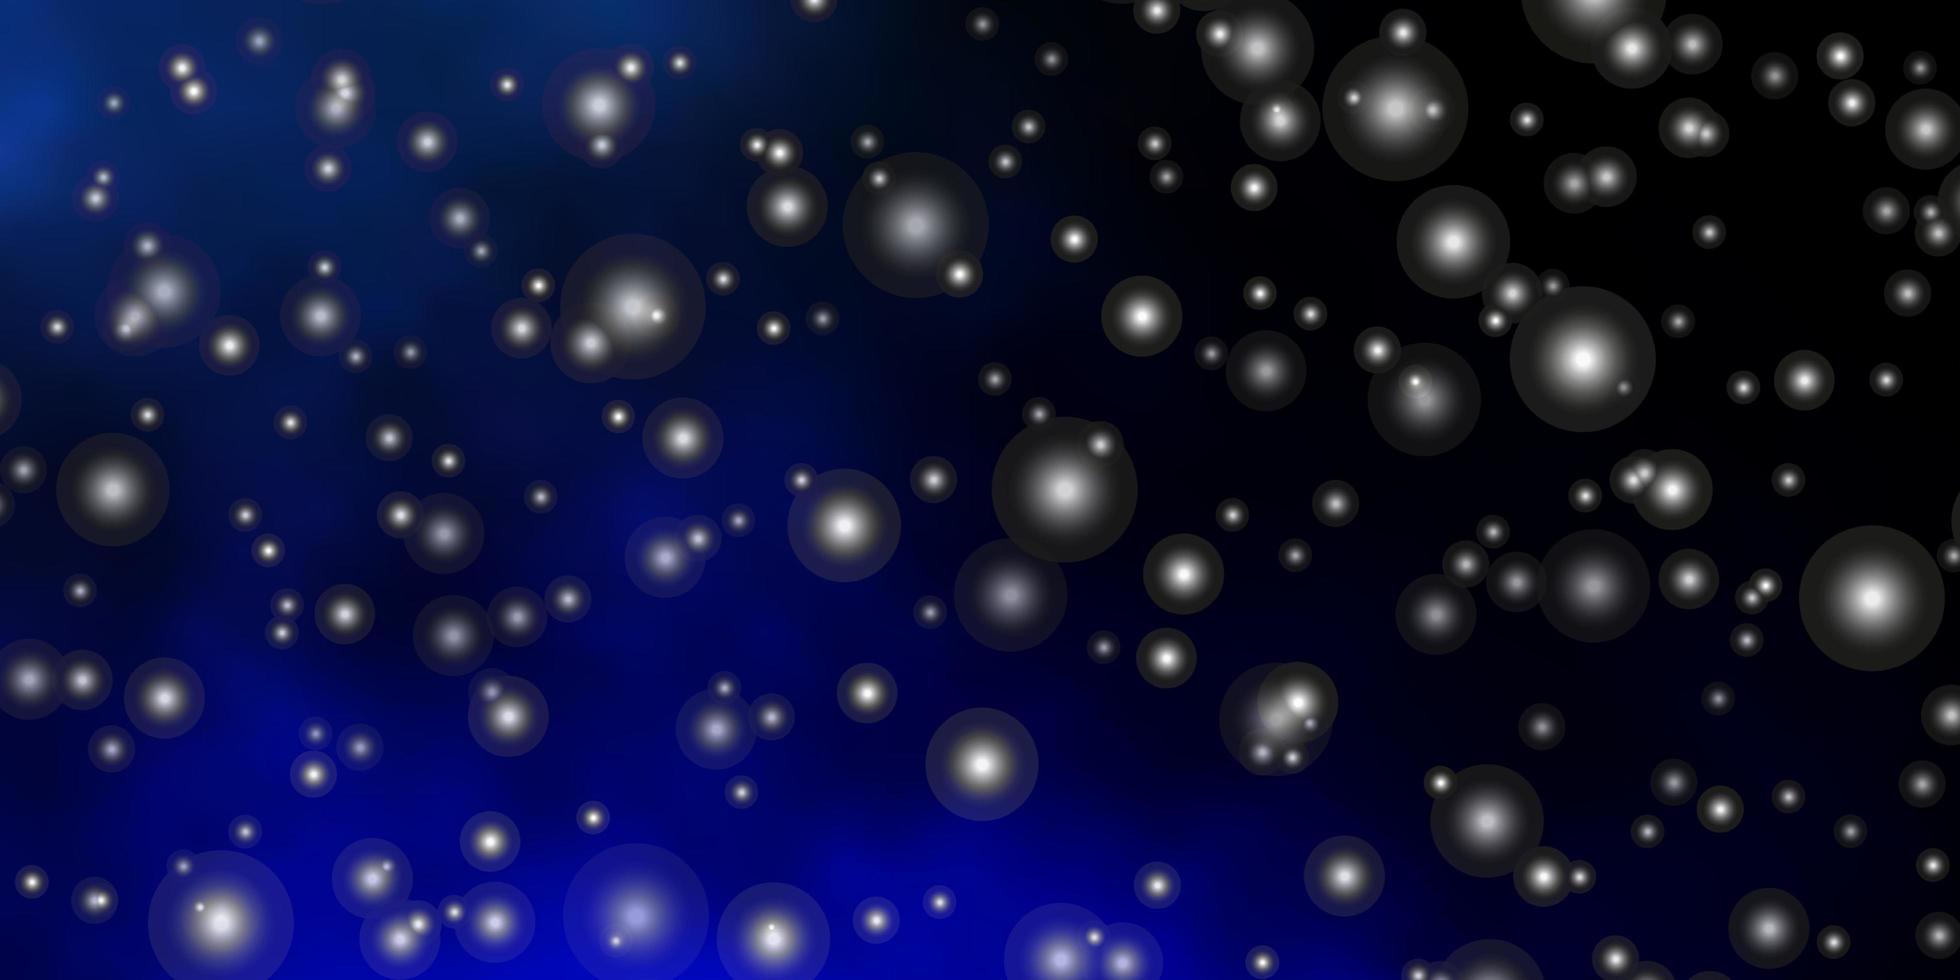 fundo azul escuro com estrelas coloridas ilustração decorativa com estrelas no modelo abstrato para páginas de destino de sites vetor